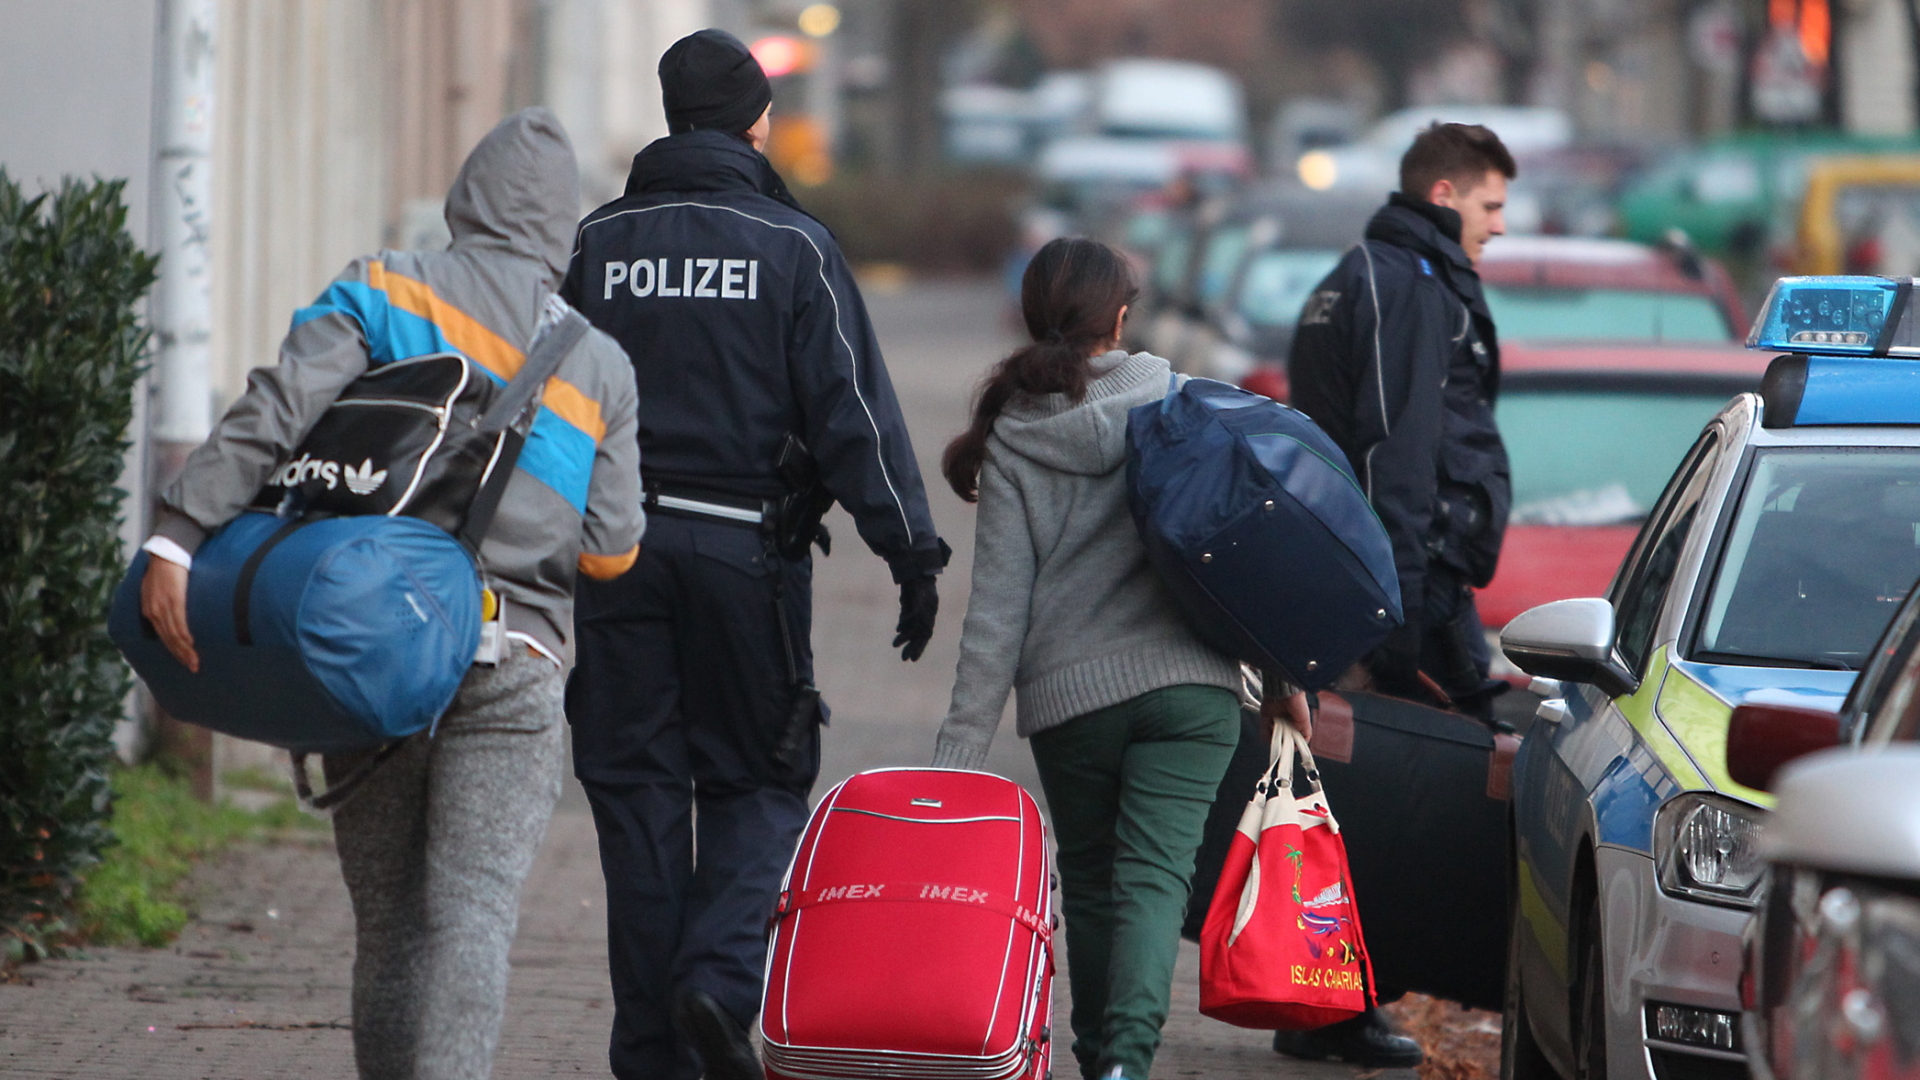  Abgelehnte Asylbewerber werden zum Transport zum Flughafen abgeholt. | dpa